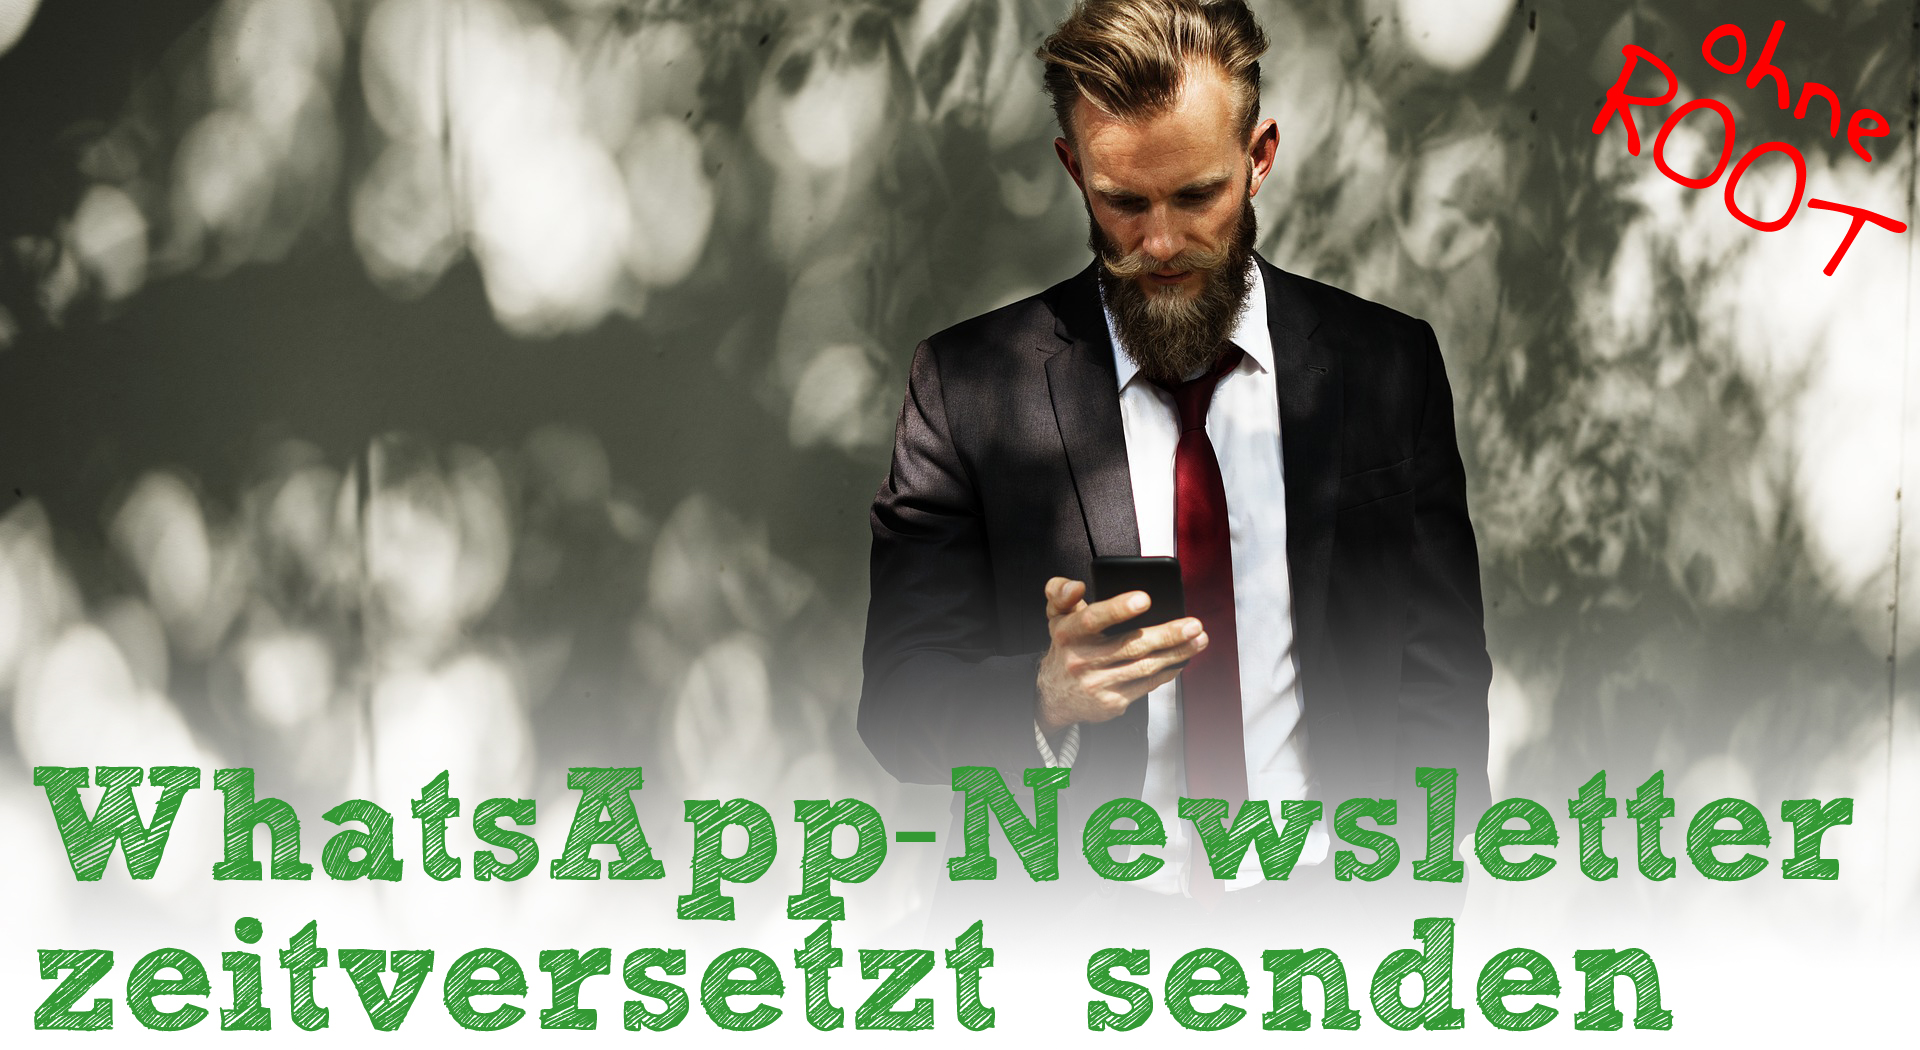 WhatsApp-Newsletter zeitversetzt senden - Header